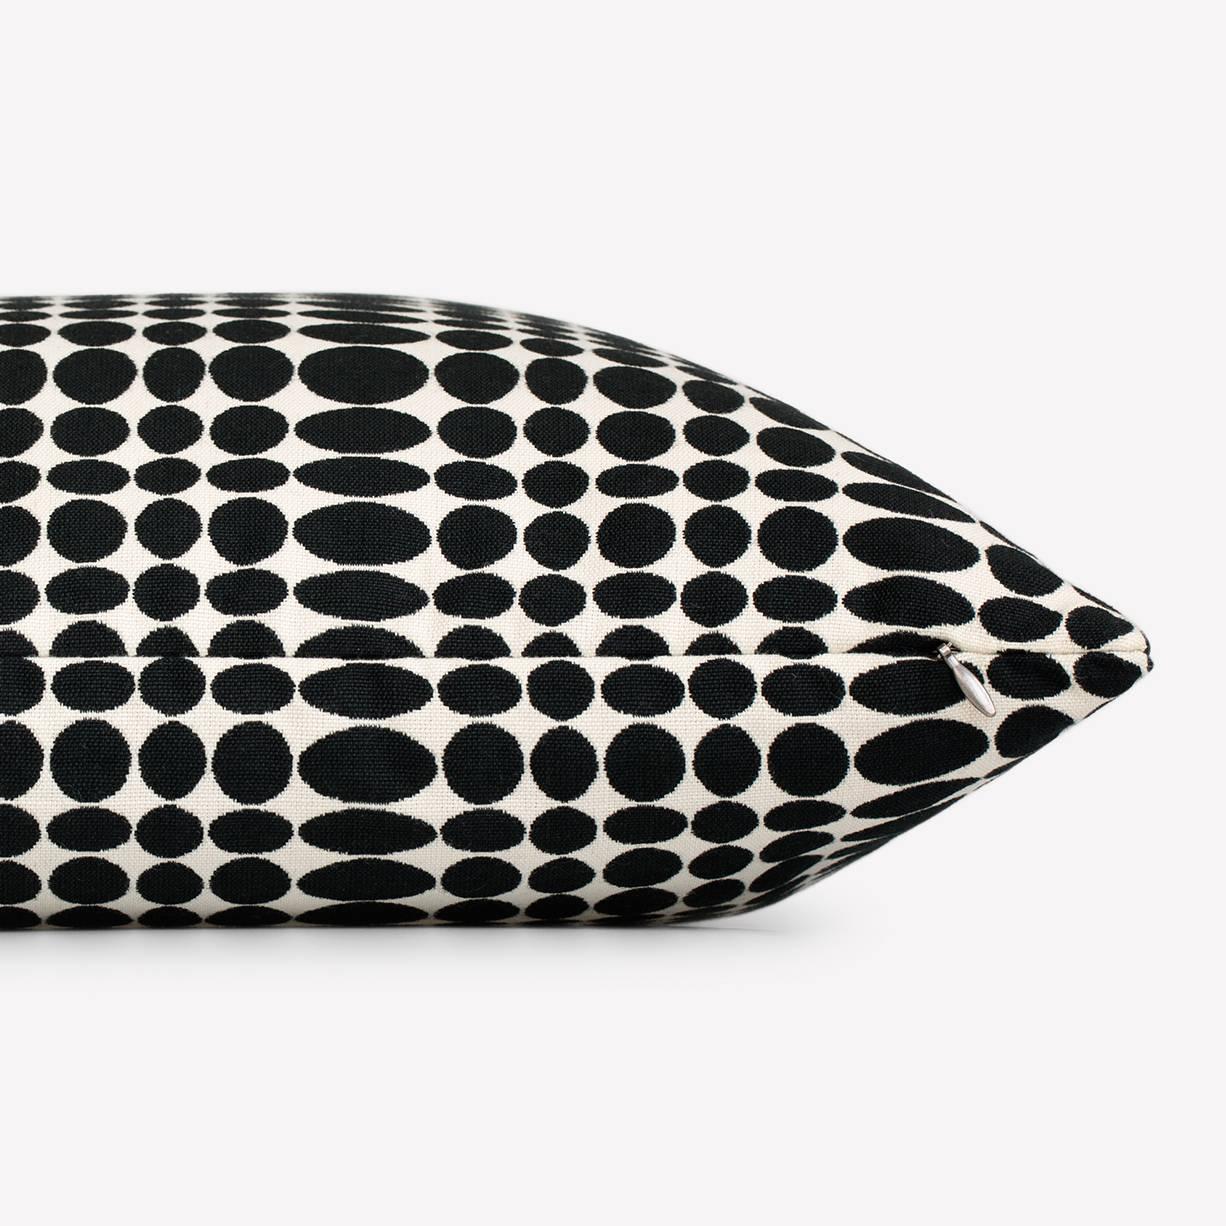 Maharam-Kissen
Unisol von Verner Panton
001 schwarz/weiß

Das 1965 von Verner Panton entworfene Unisol ist ein grafisches Muster, das Reihen von schwarzen Ellipsen auf einem weißen Rund zeigt. Die Ellipsen werden in rhythmischen Abständen in der